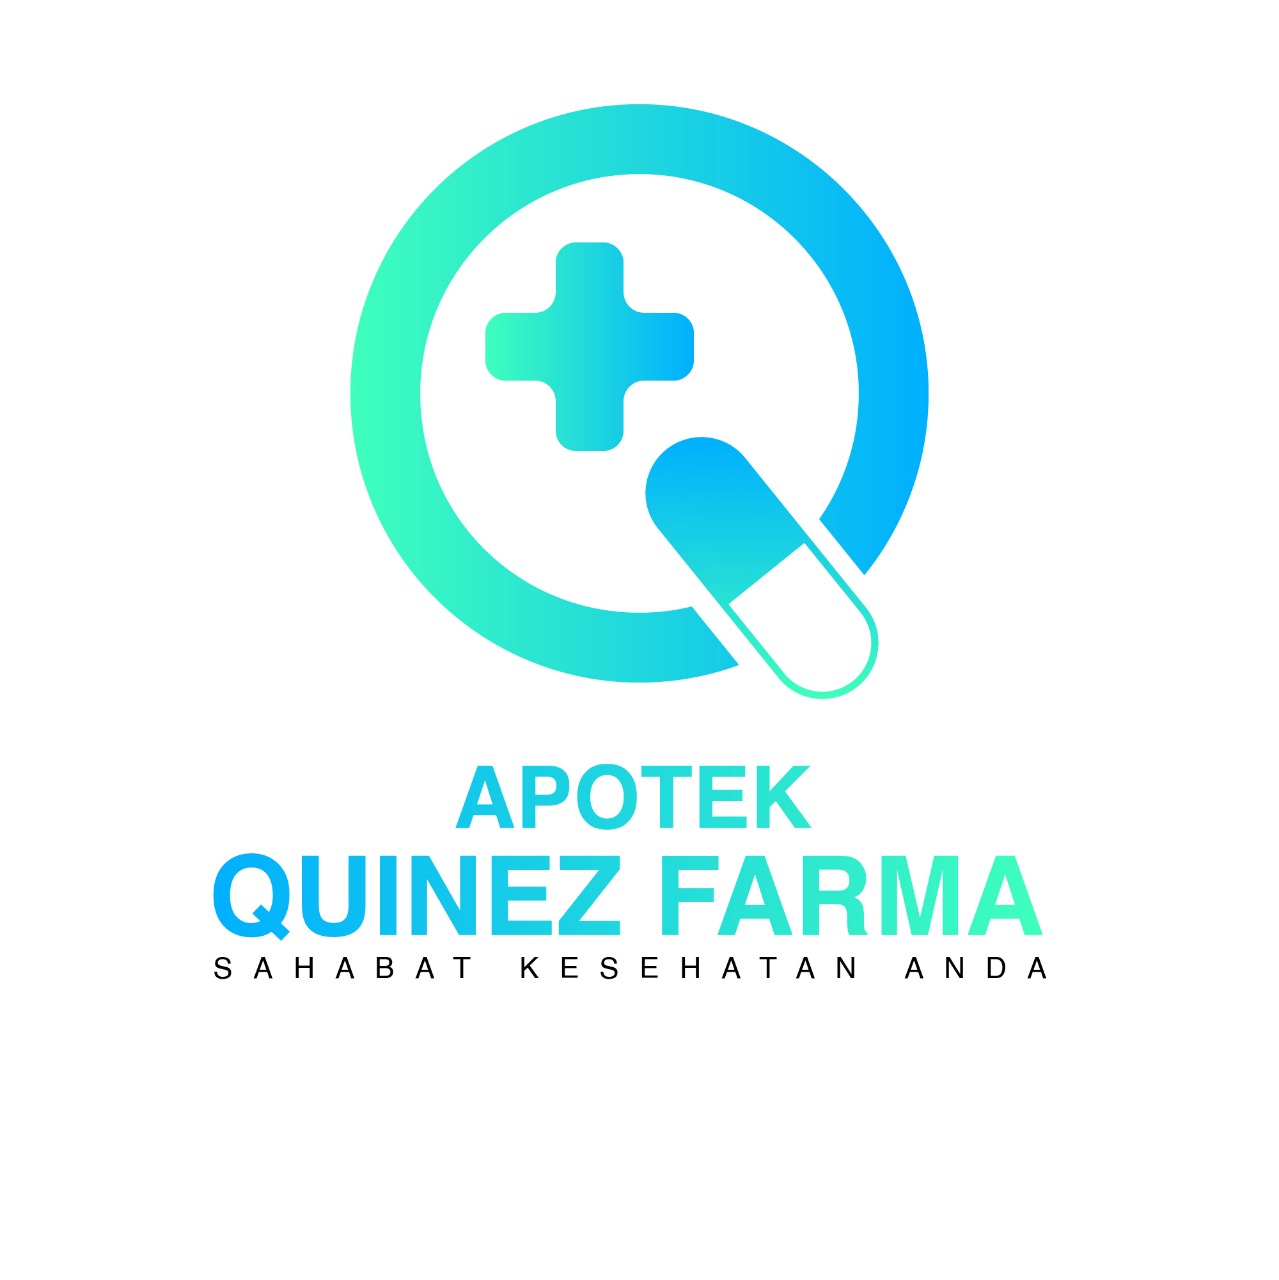 Apotek Quinez Farma